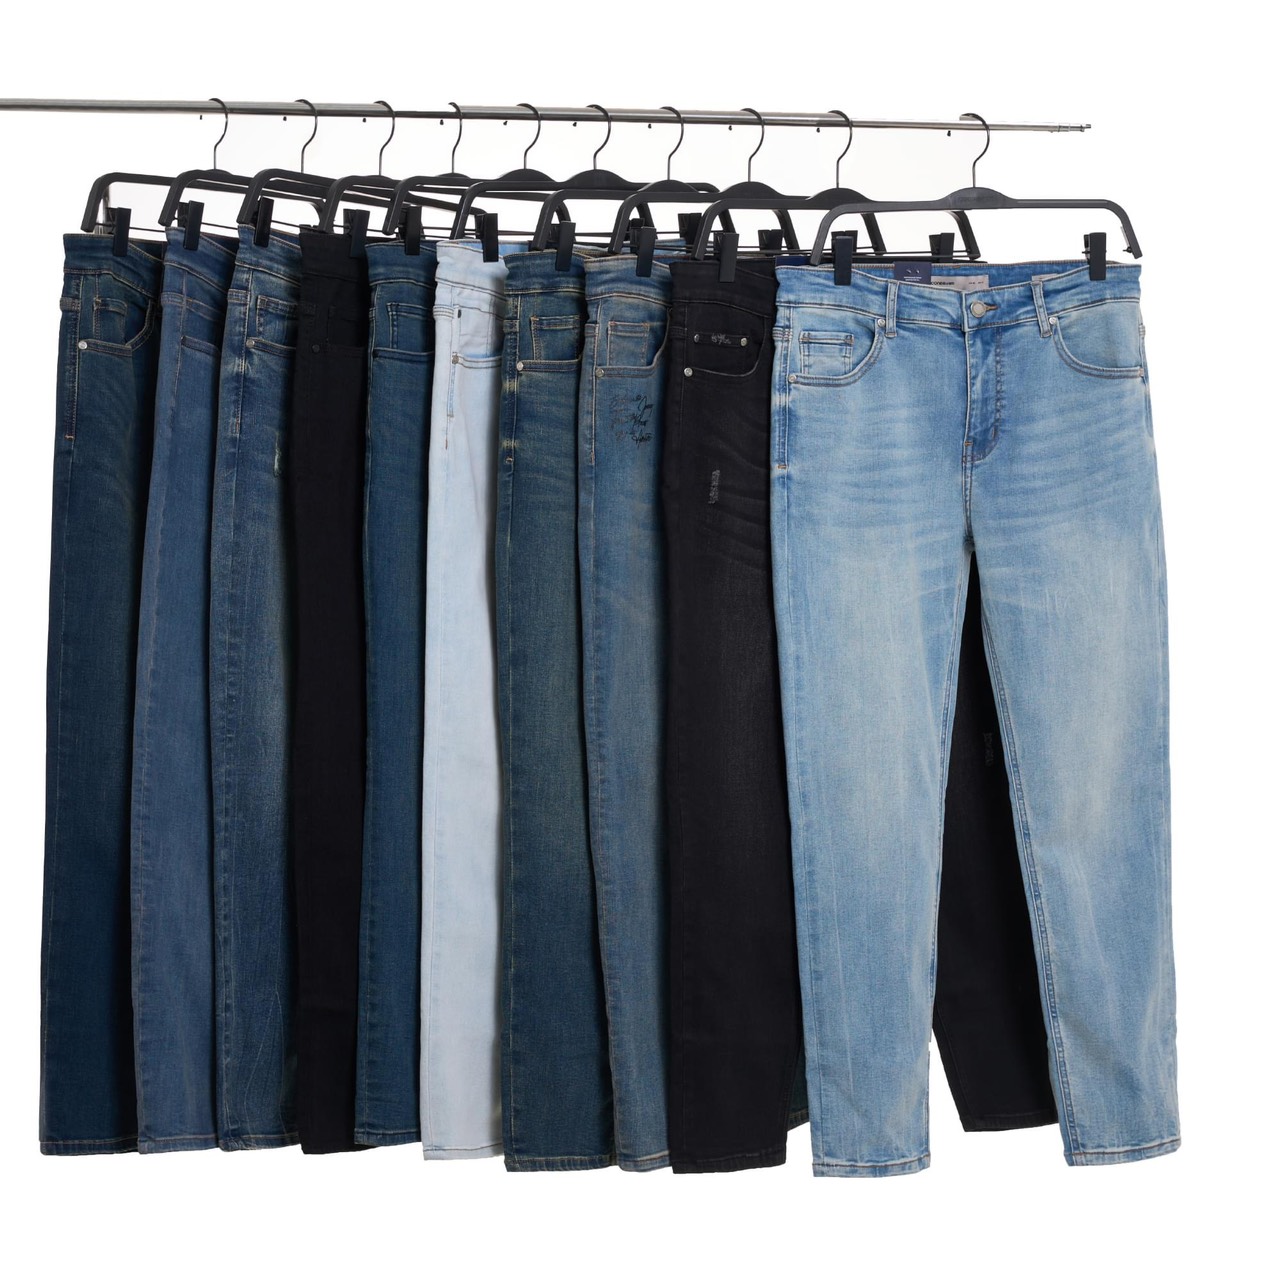 Nguồn hàng bán buôn, bán sỉ quần áo jean tại xưởng